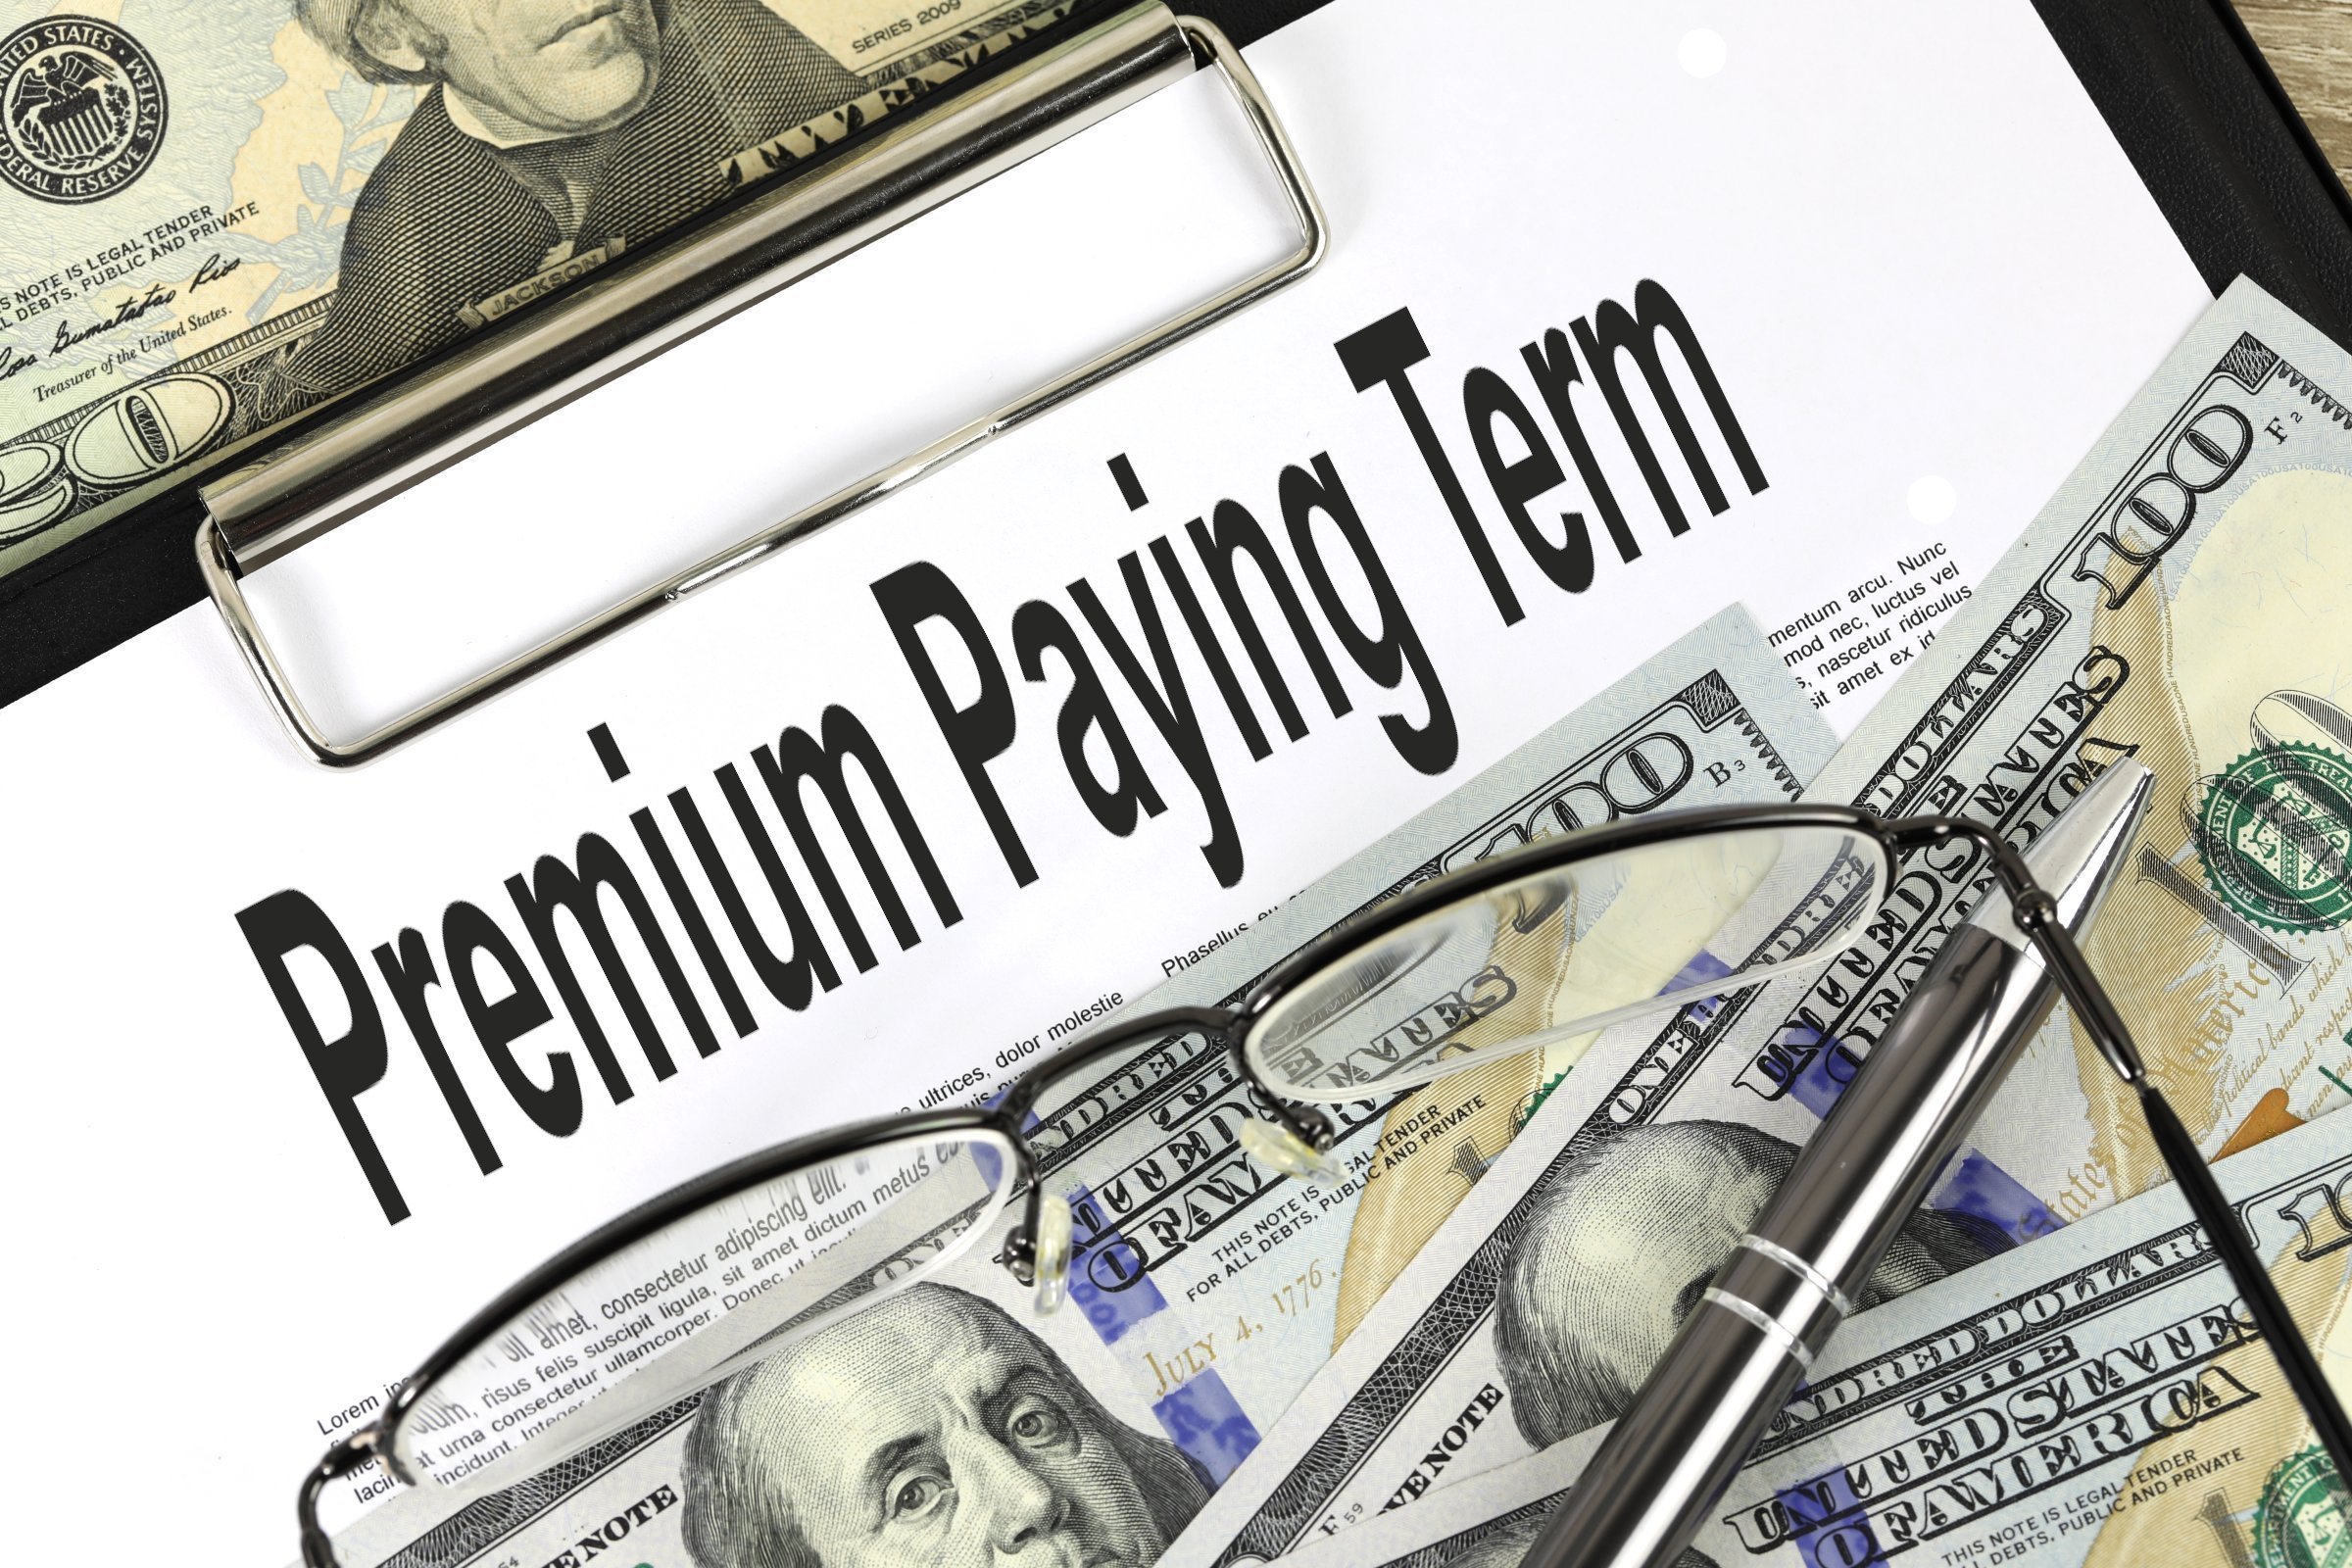 premium paying term